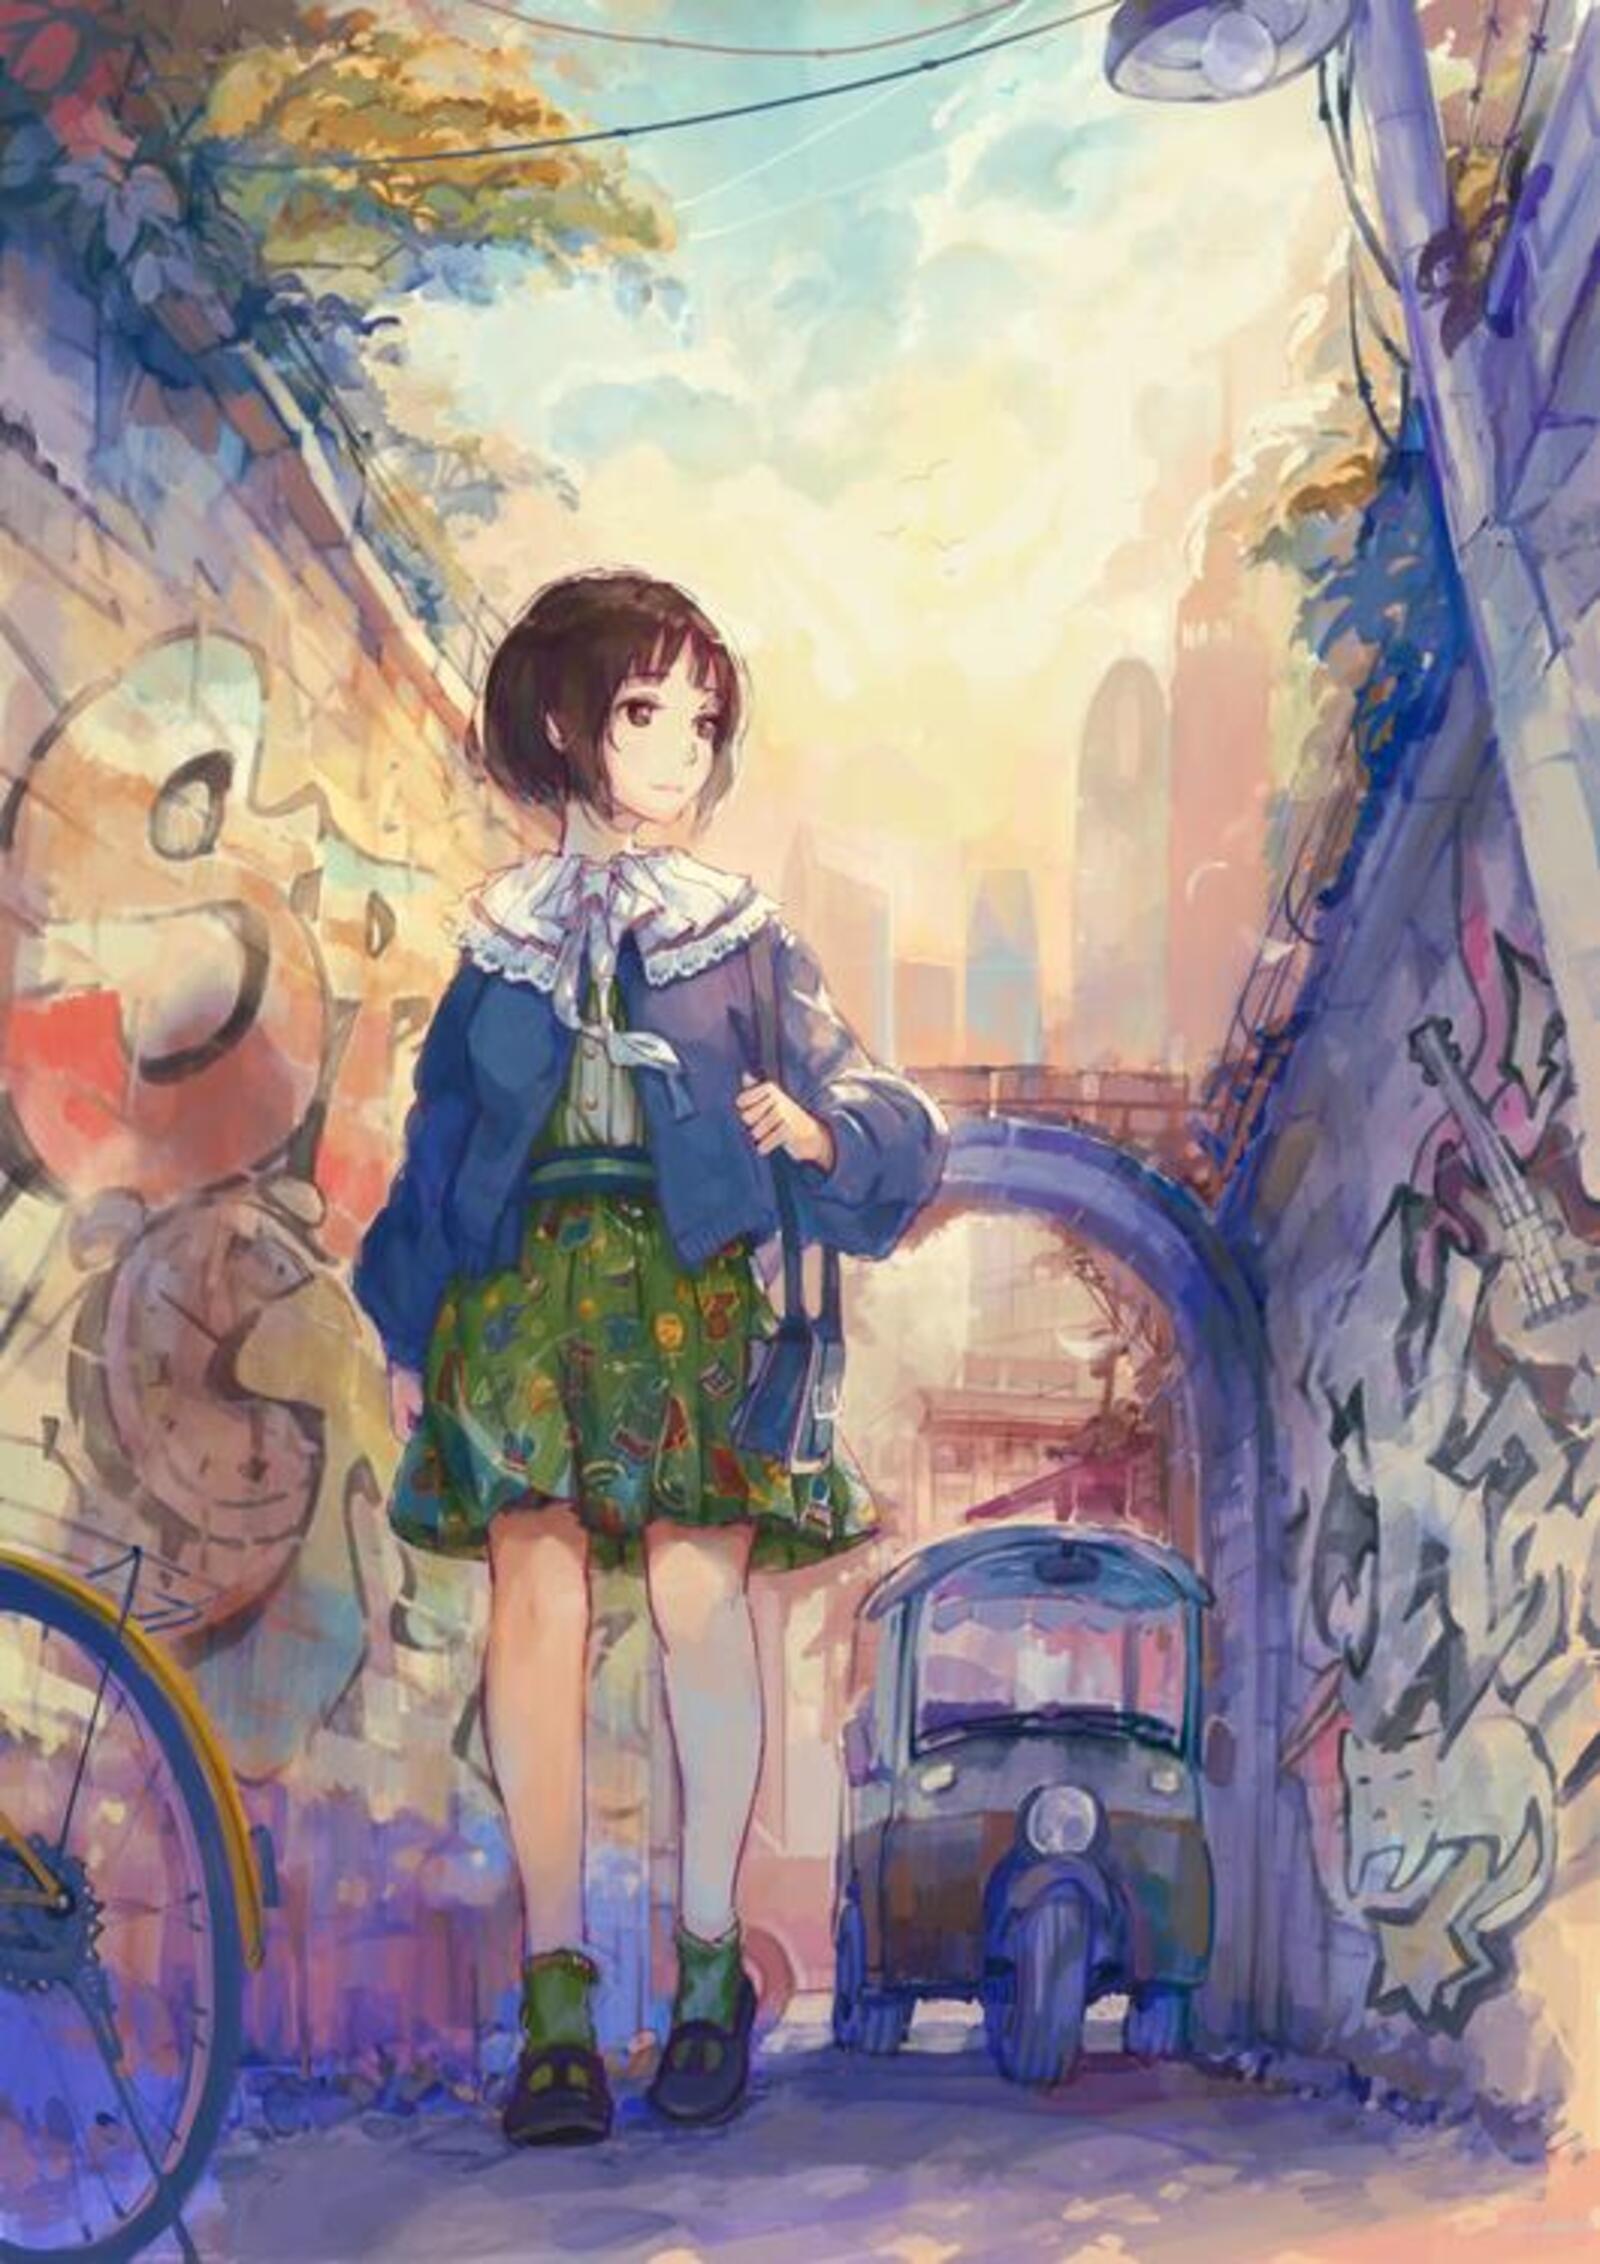 Wallpapers wallpaper anime girl street slice of life on the desktop